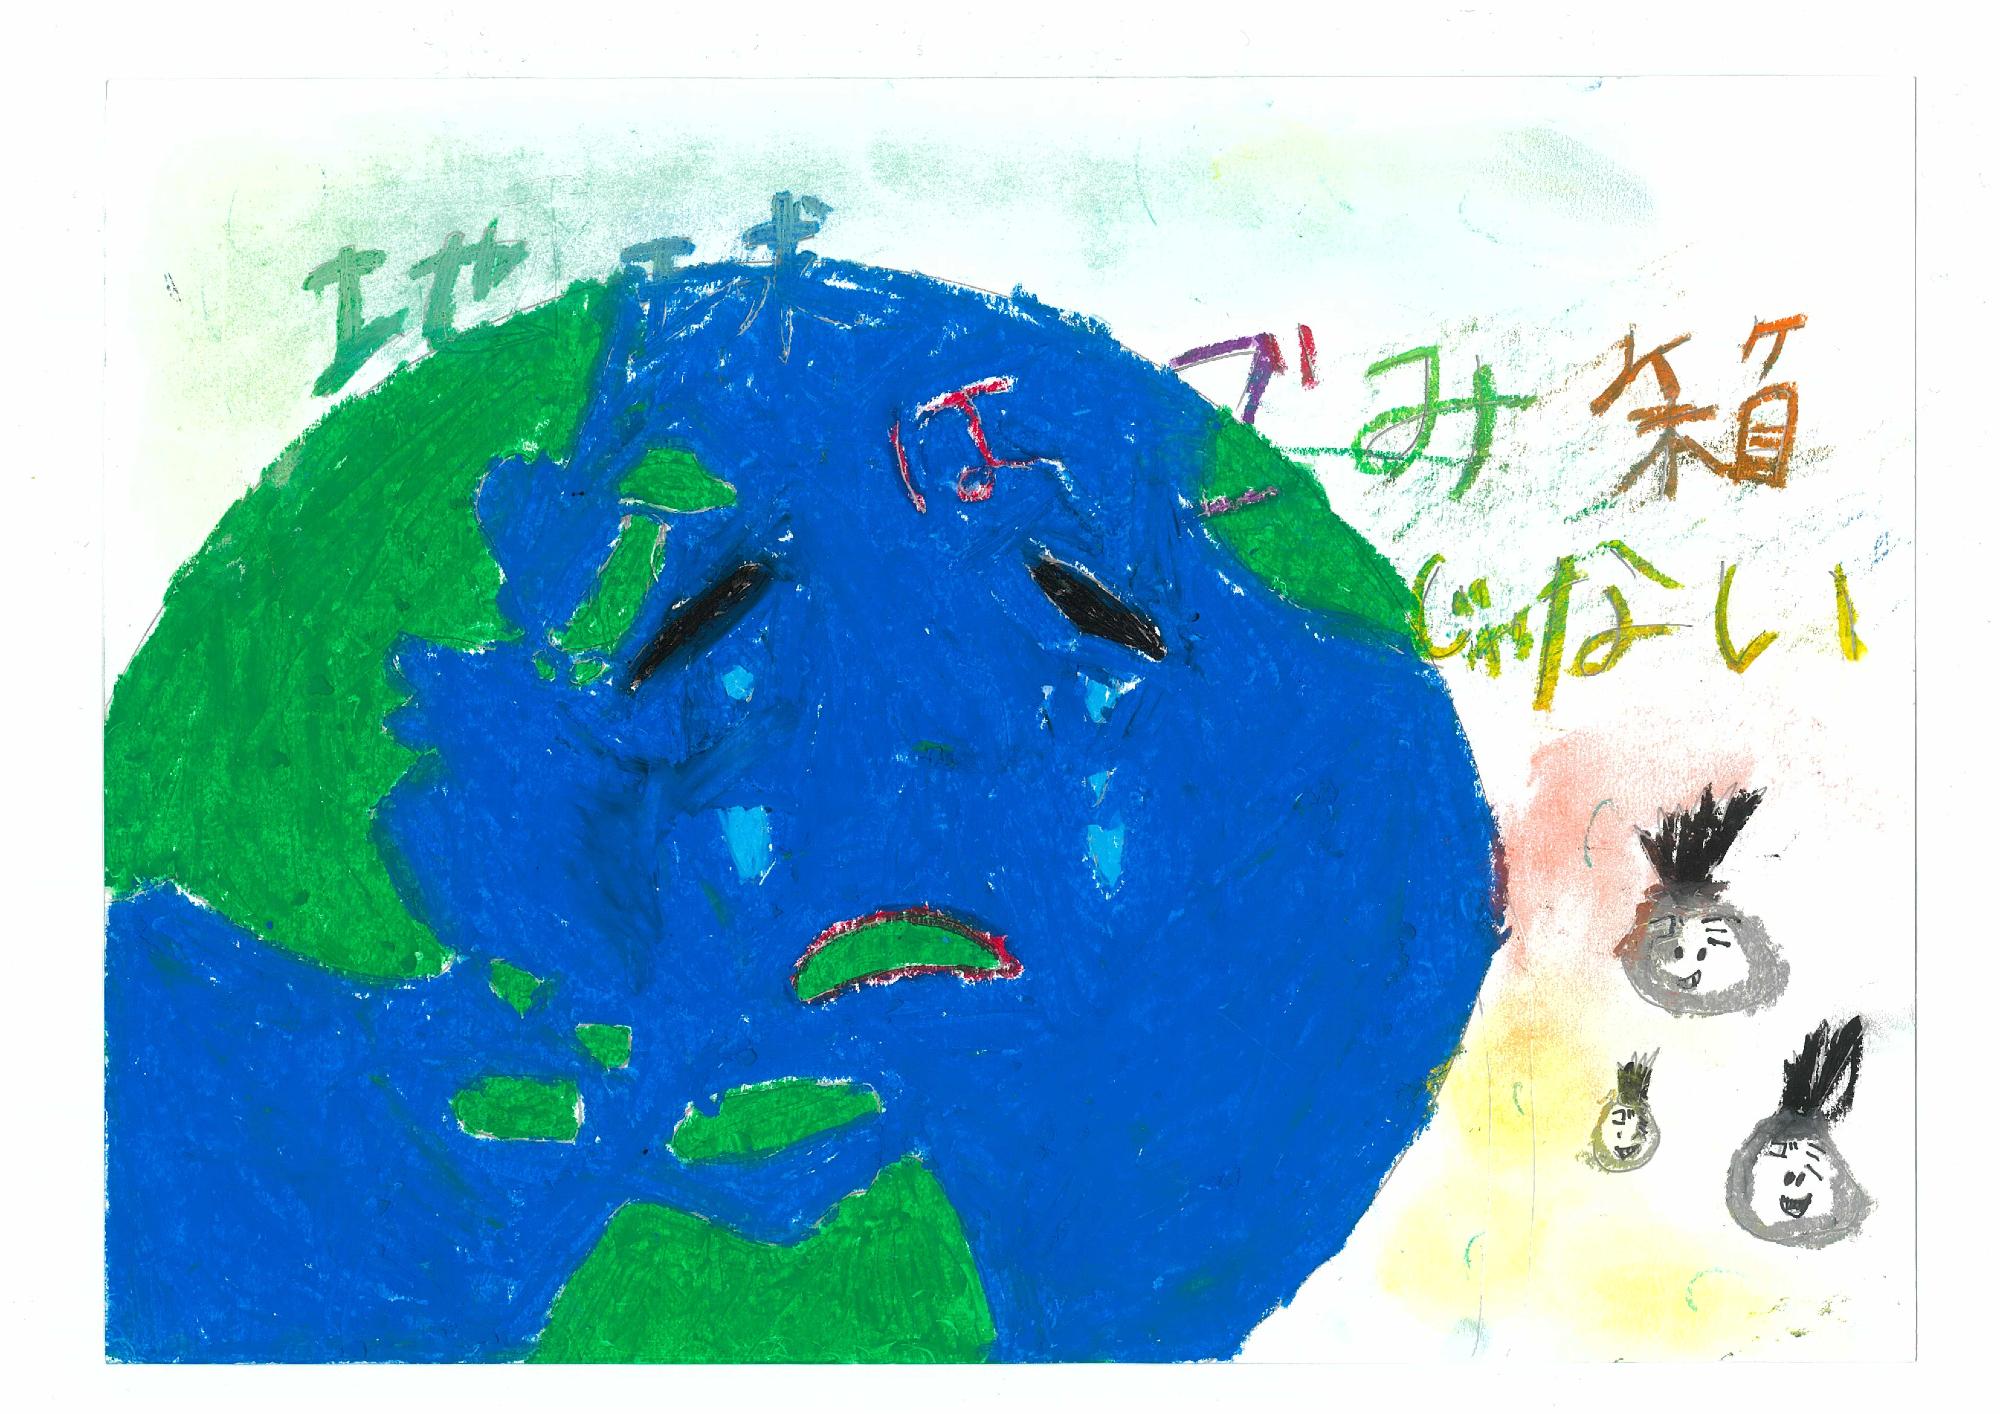 優秀賞(生活環境の保全部門) 古川橋小学校 小林 るのあさん 地球がくるしくなりそうなエコ